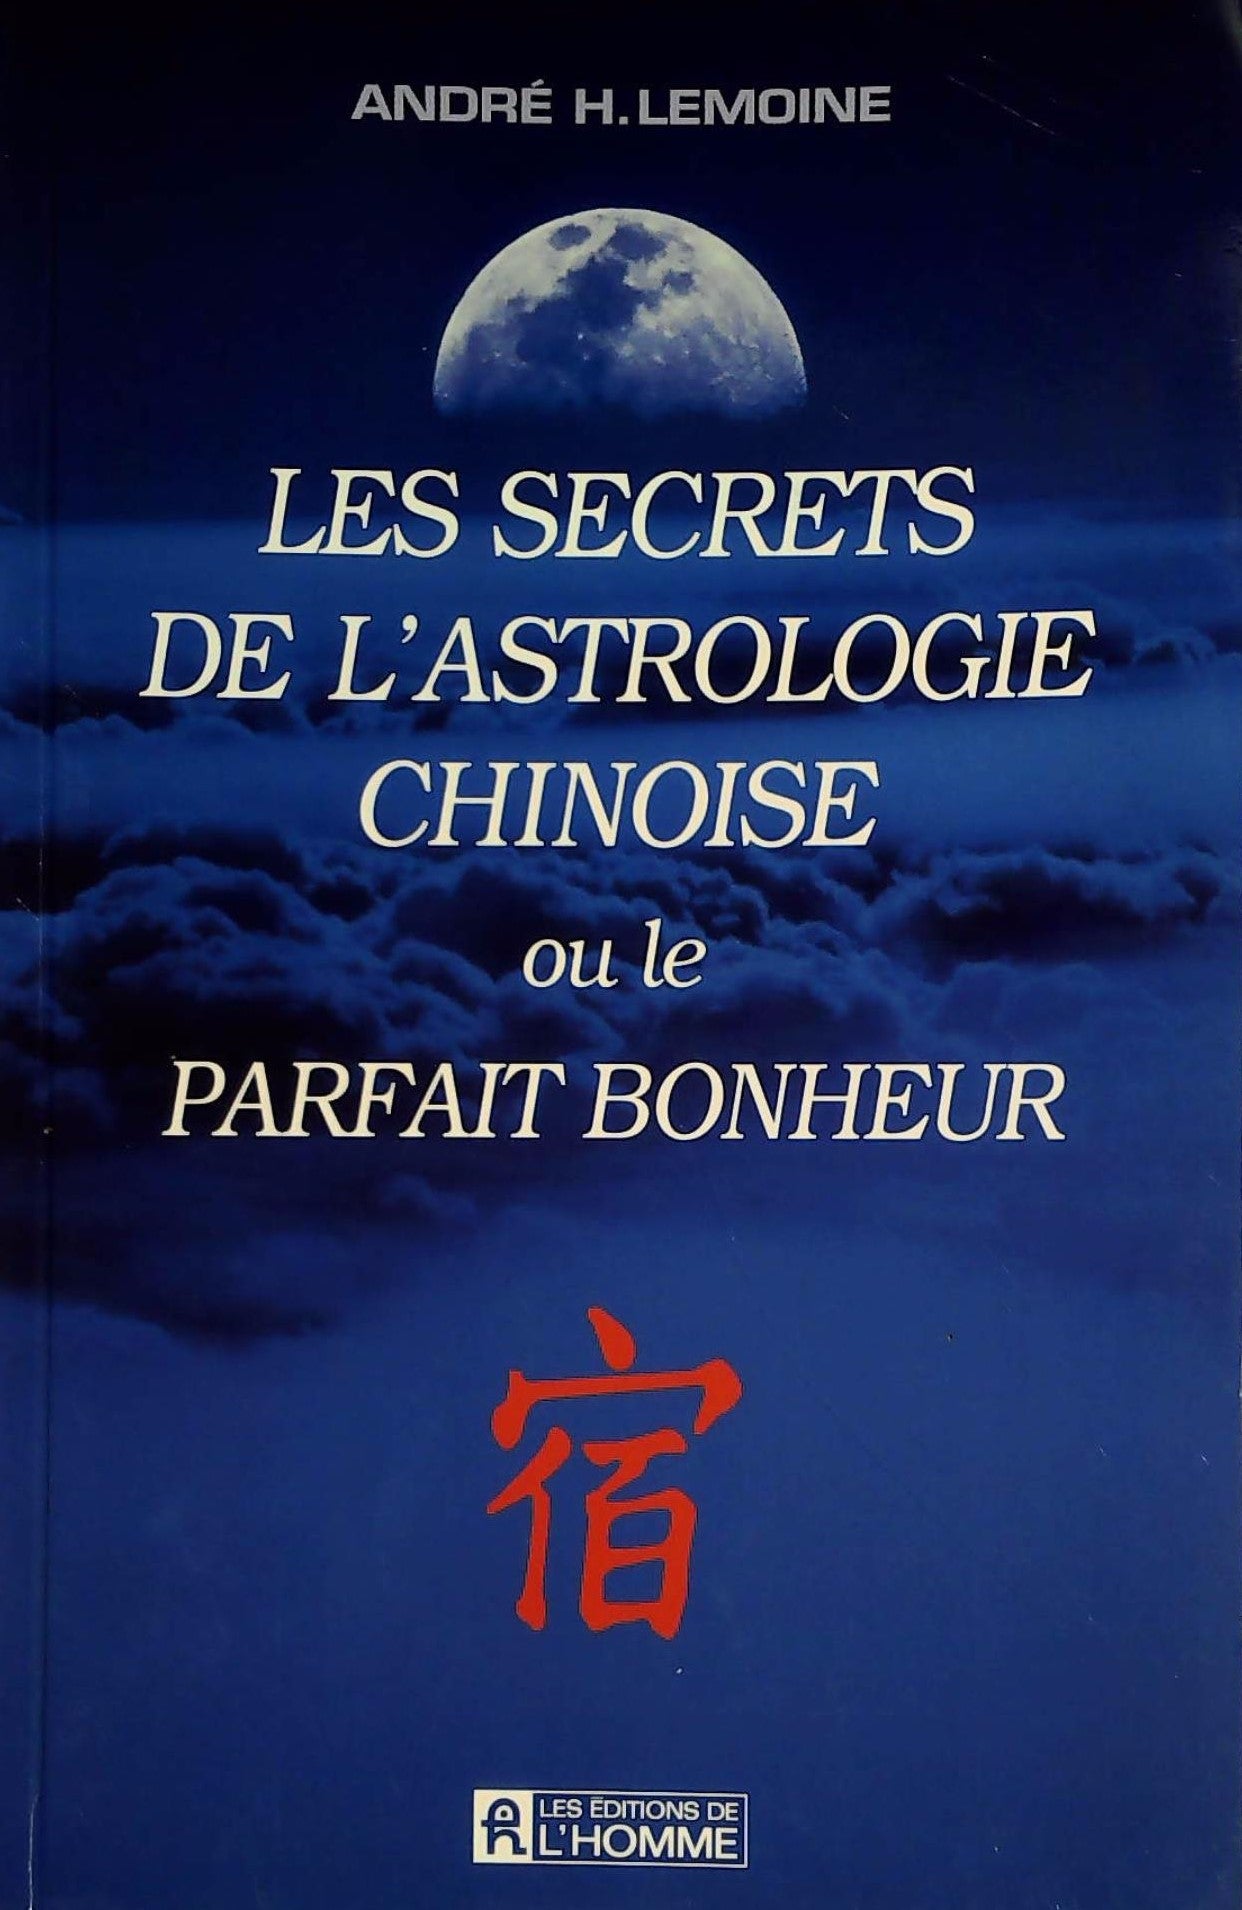 Livre ISBN 2761911903 Les secrets de l'astrologie chinoise ou le parfait bonheur (André H. Lemoine)